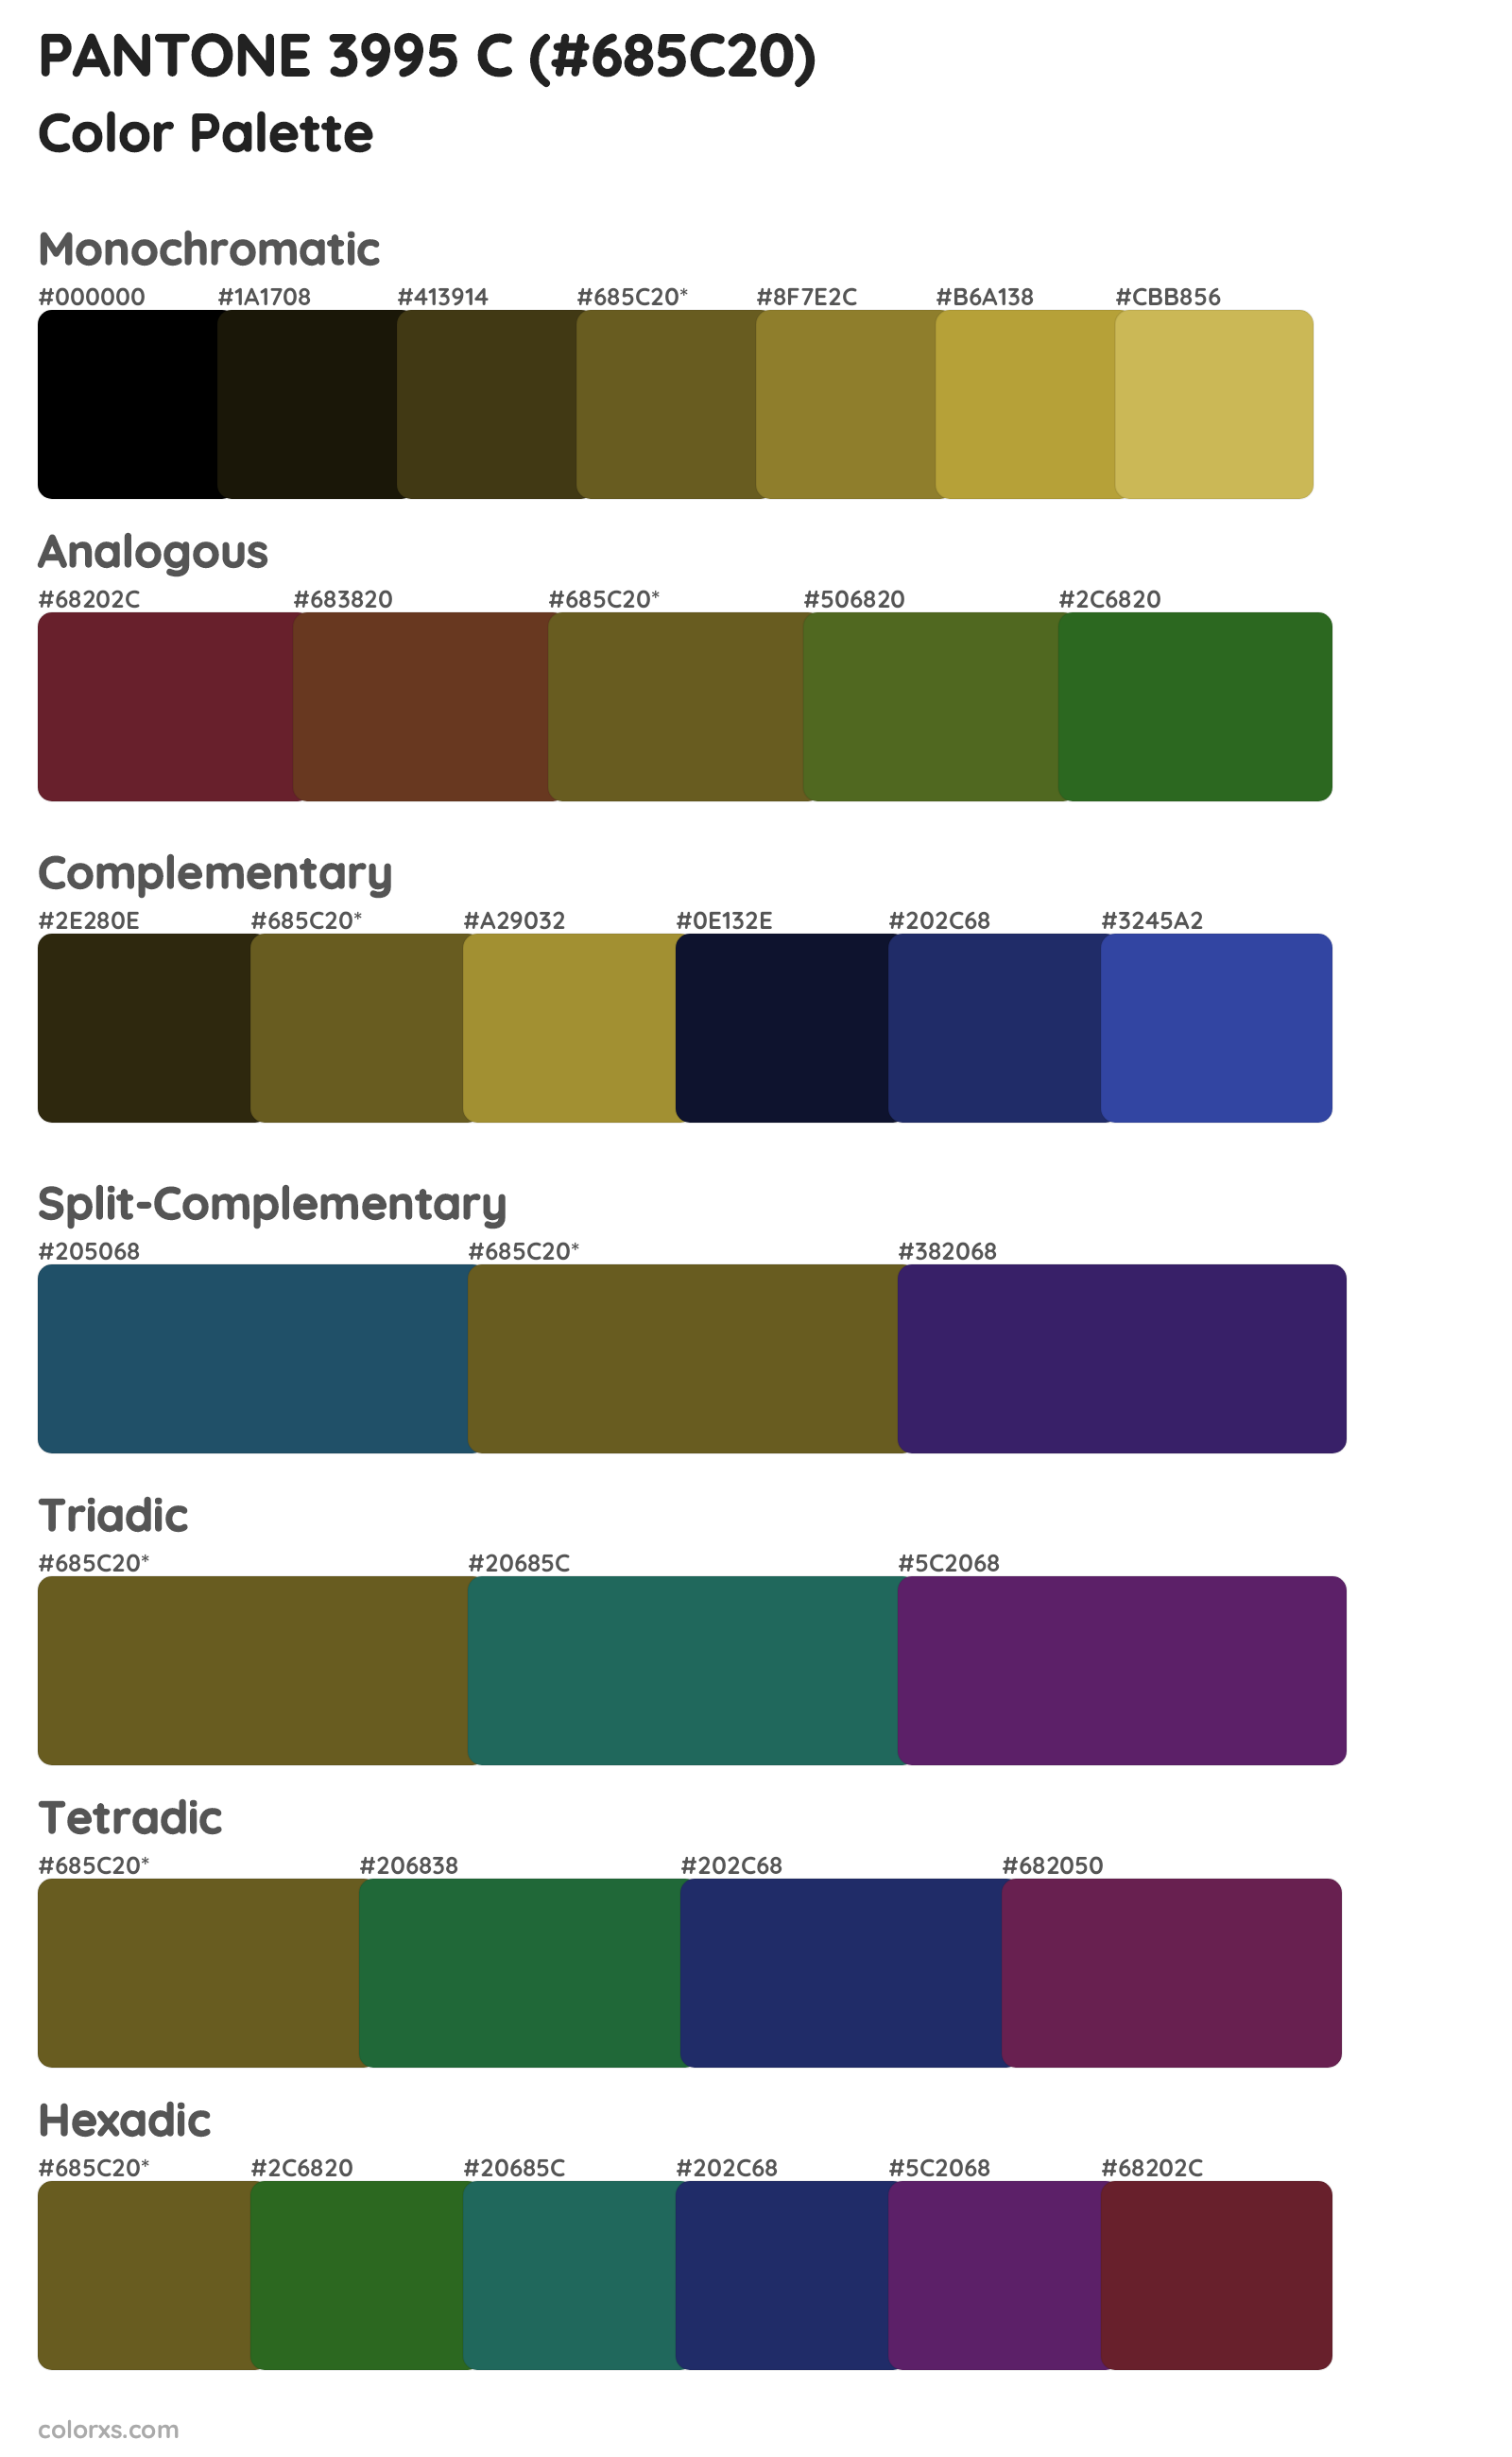 PANTONE 3995 C Color Scheme Palettes